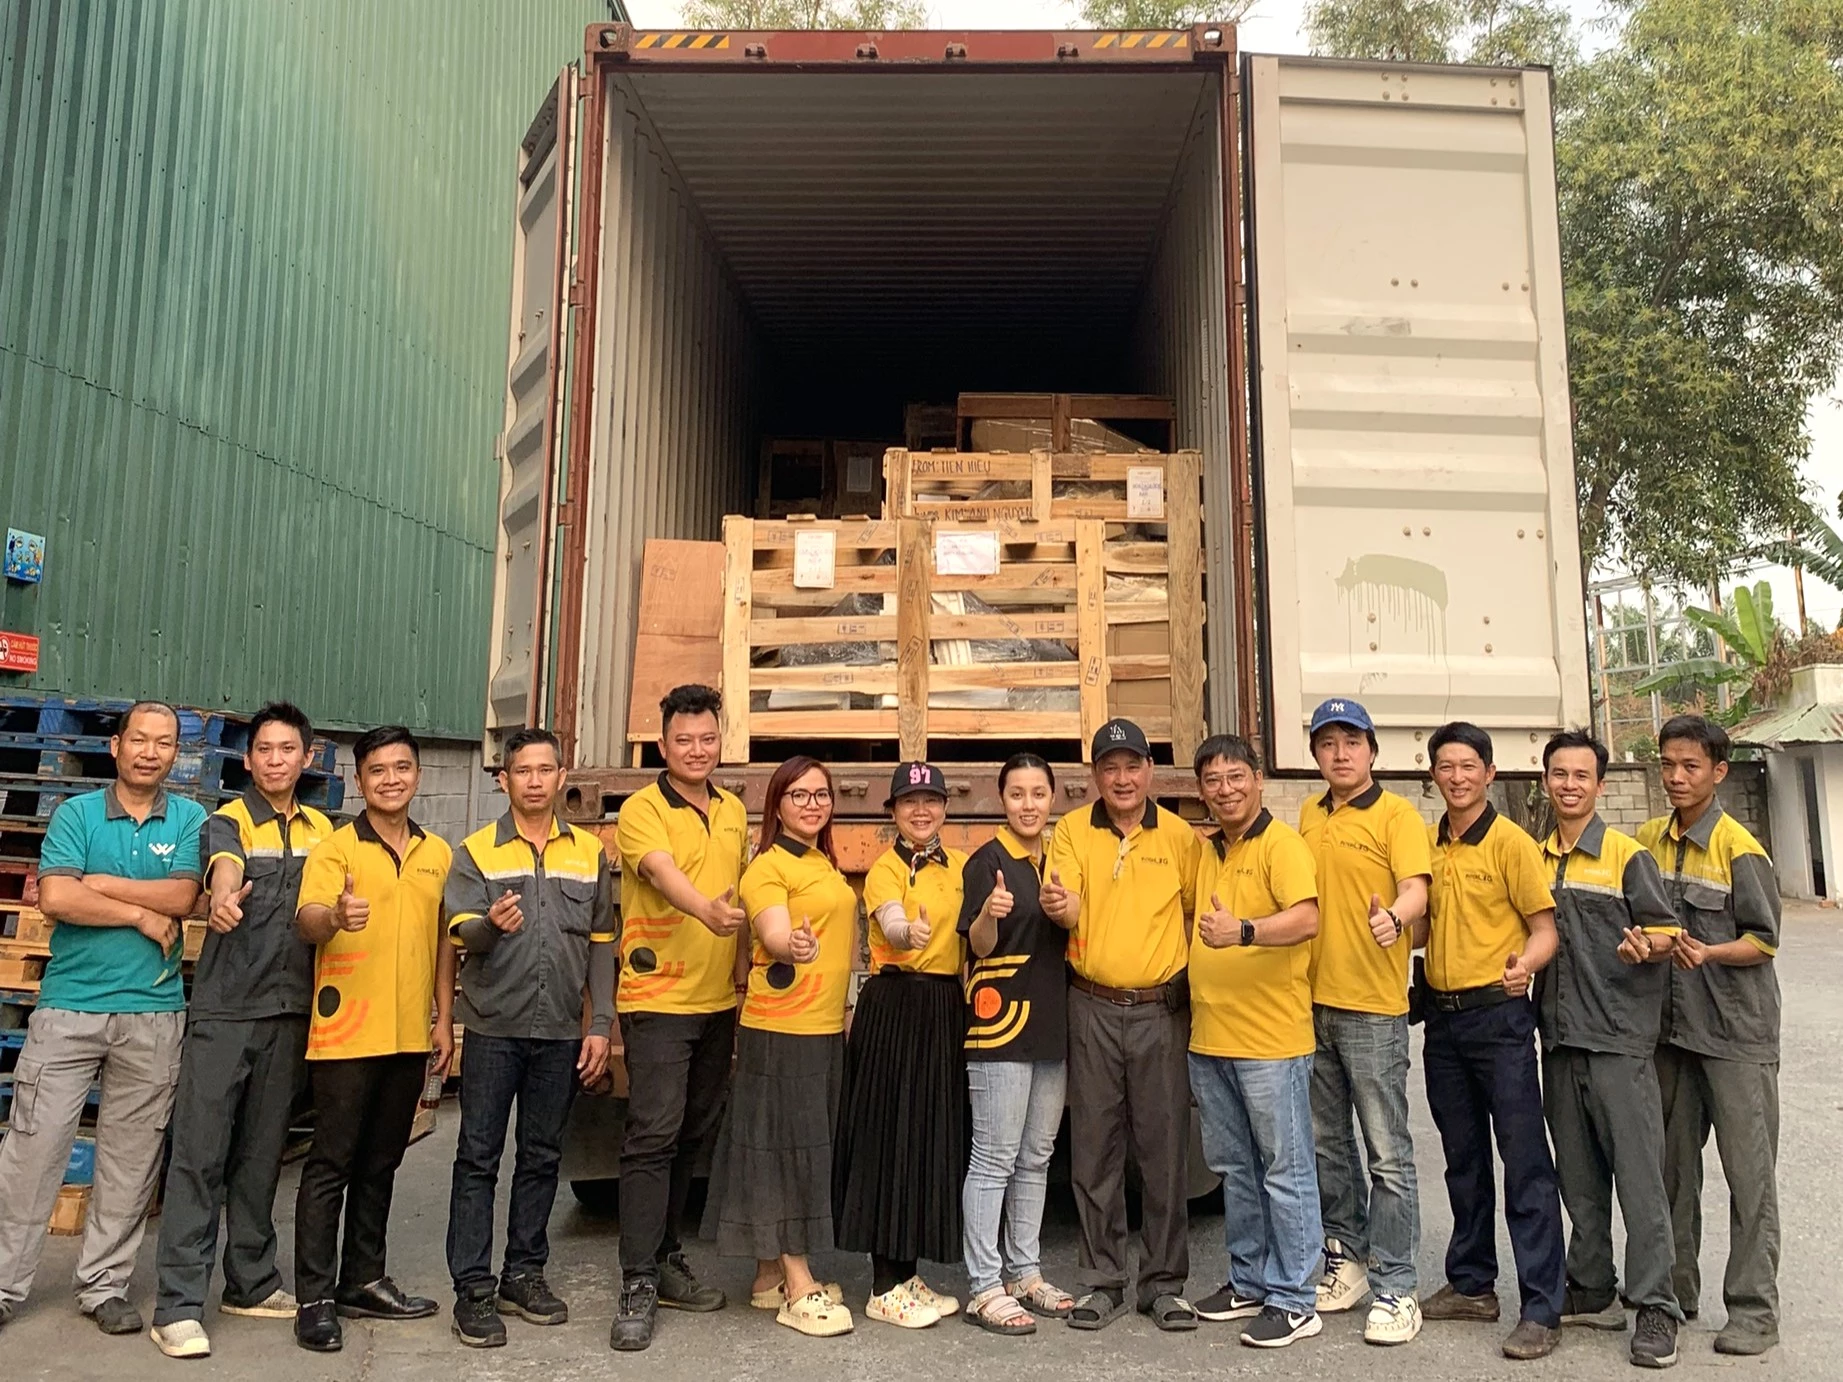 InterLOG Chinh phục hành trình mới tại TP. HCM với Container hàng lẻ đi Mỹ theo phương thức giao hàng tận nơi bao thuế DDP